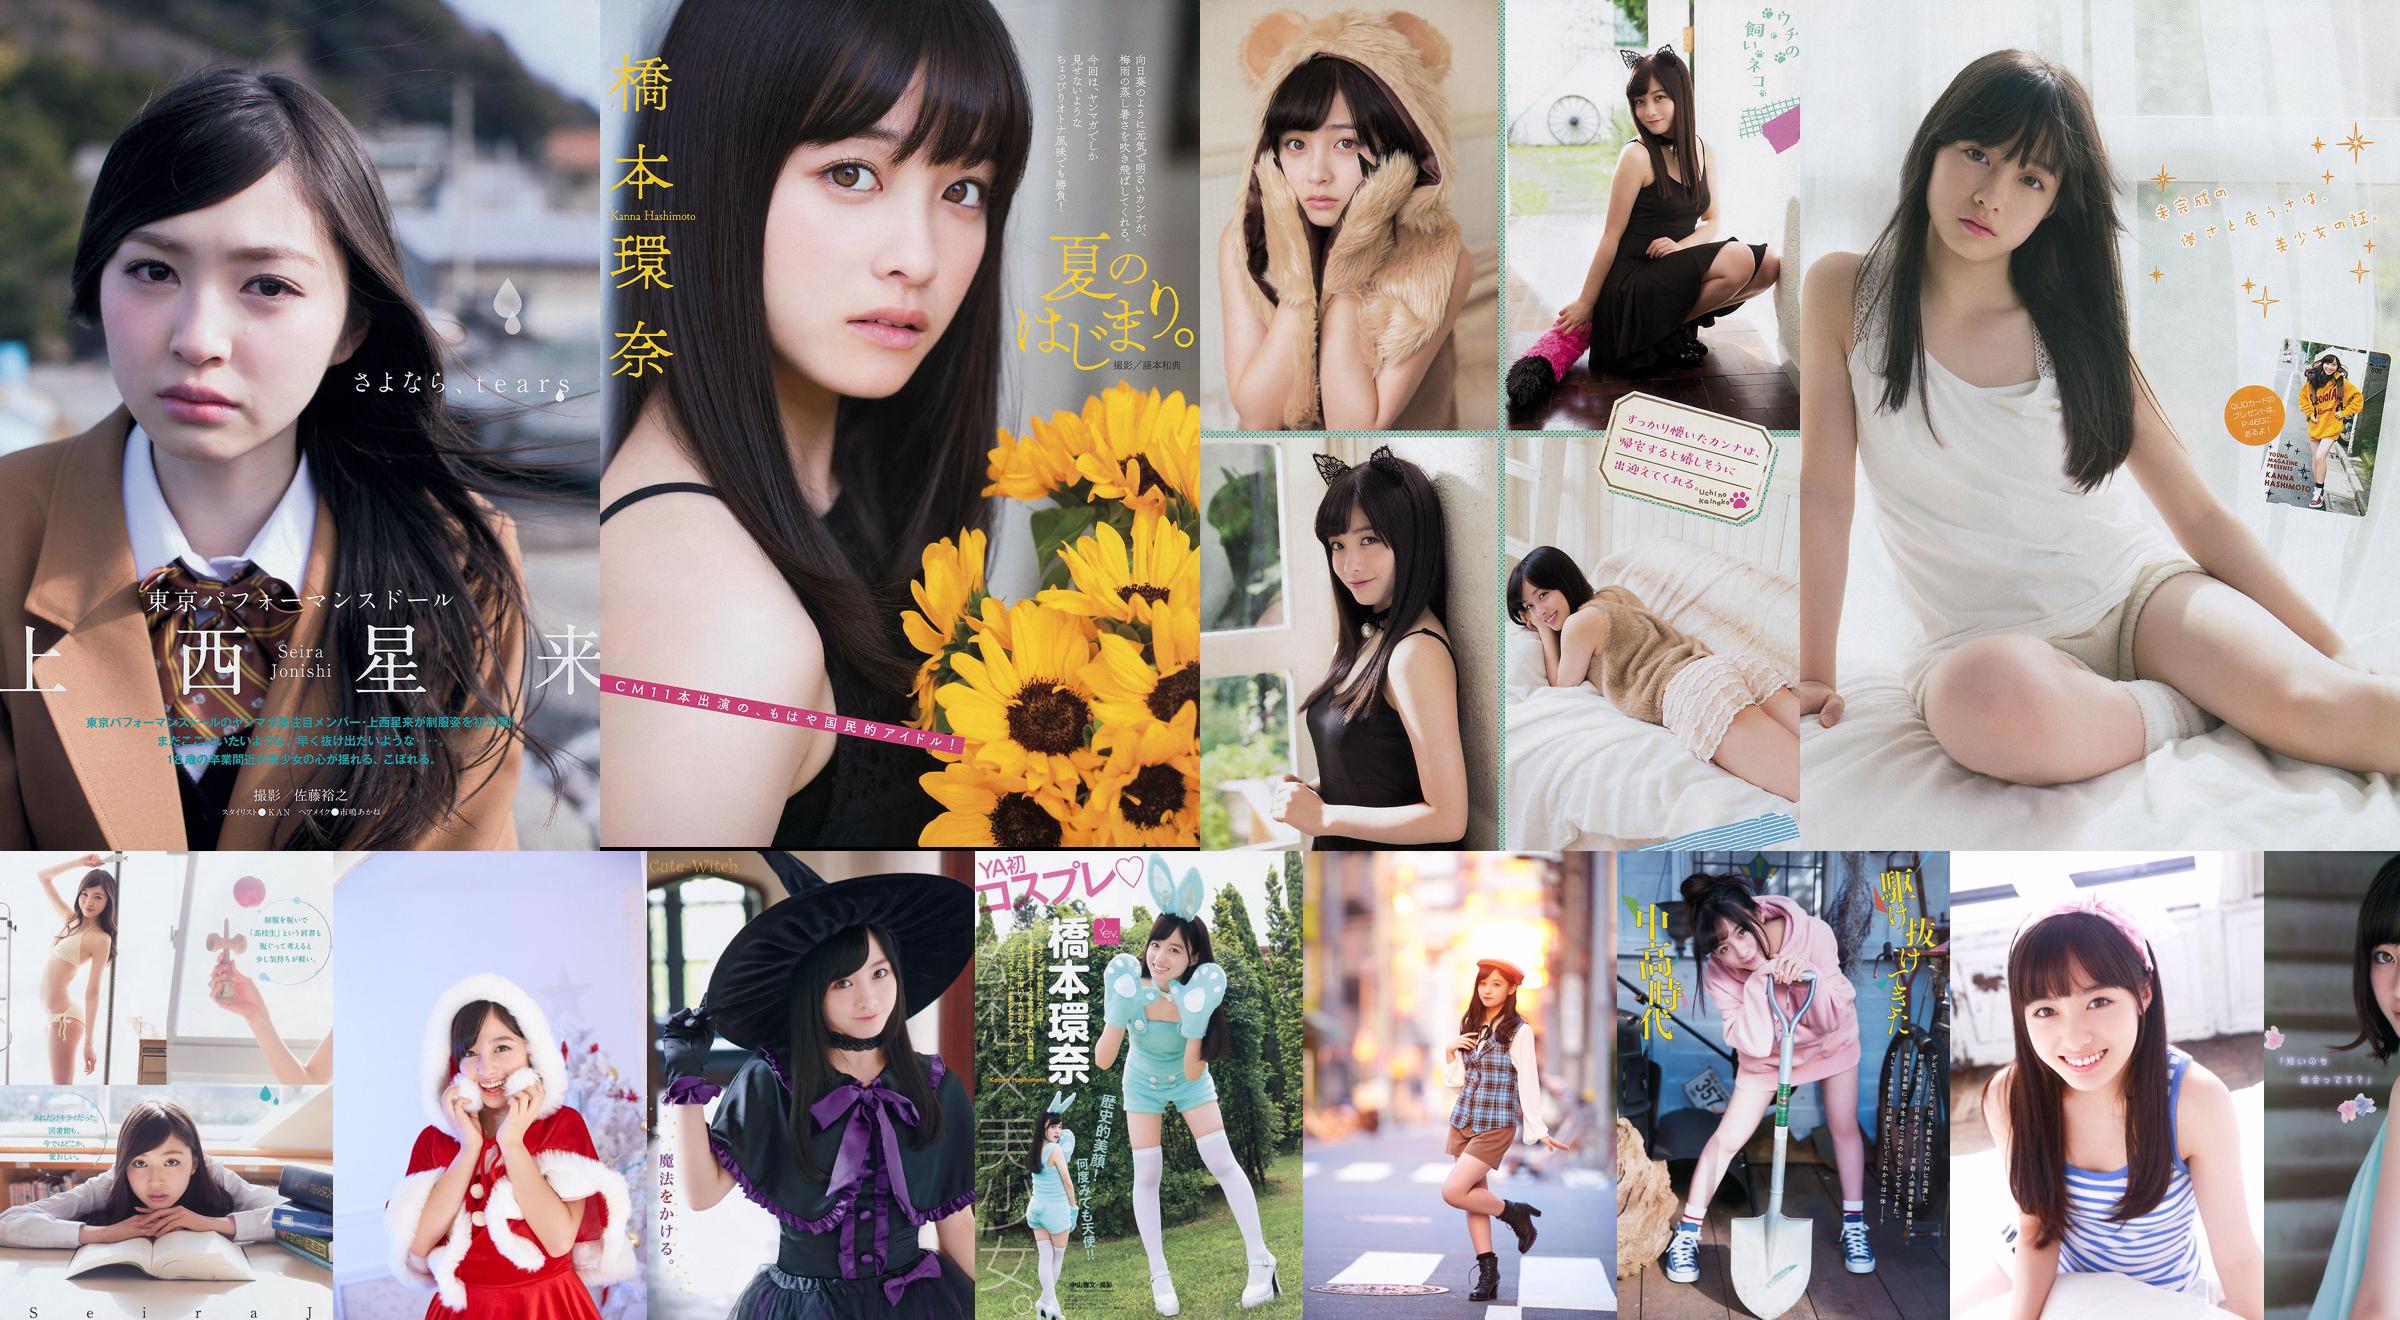 [Young Magazine] Kanna Hashimoto Yuria Kizaki 2014 Photographie n ° 34 No.3bf12e Page 3